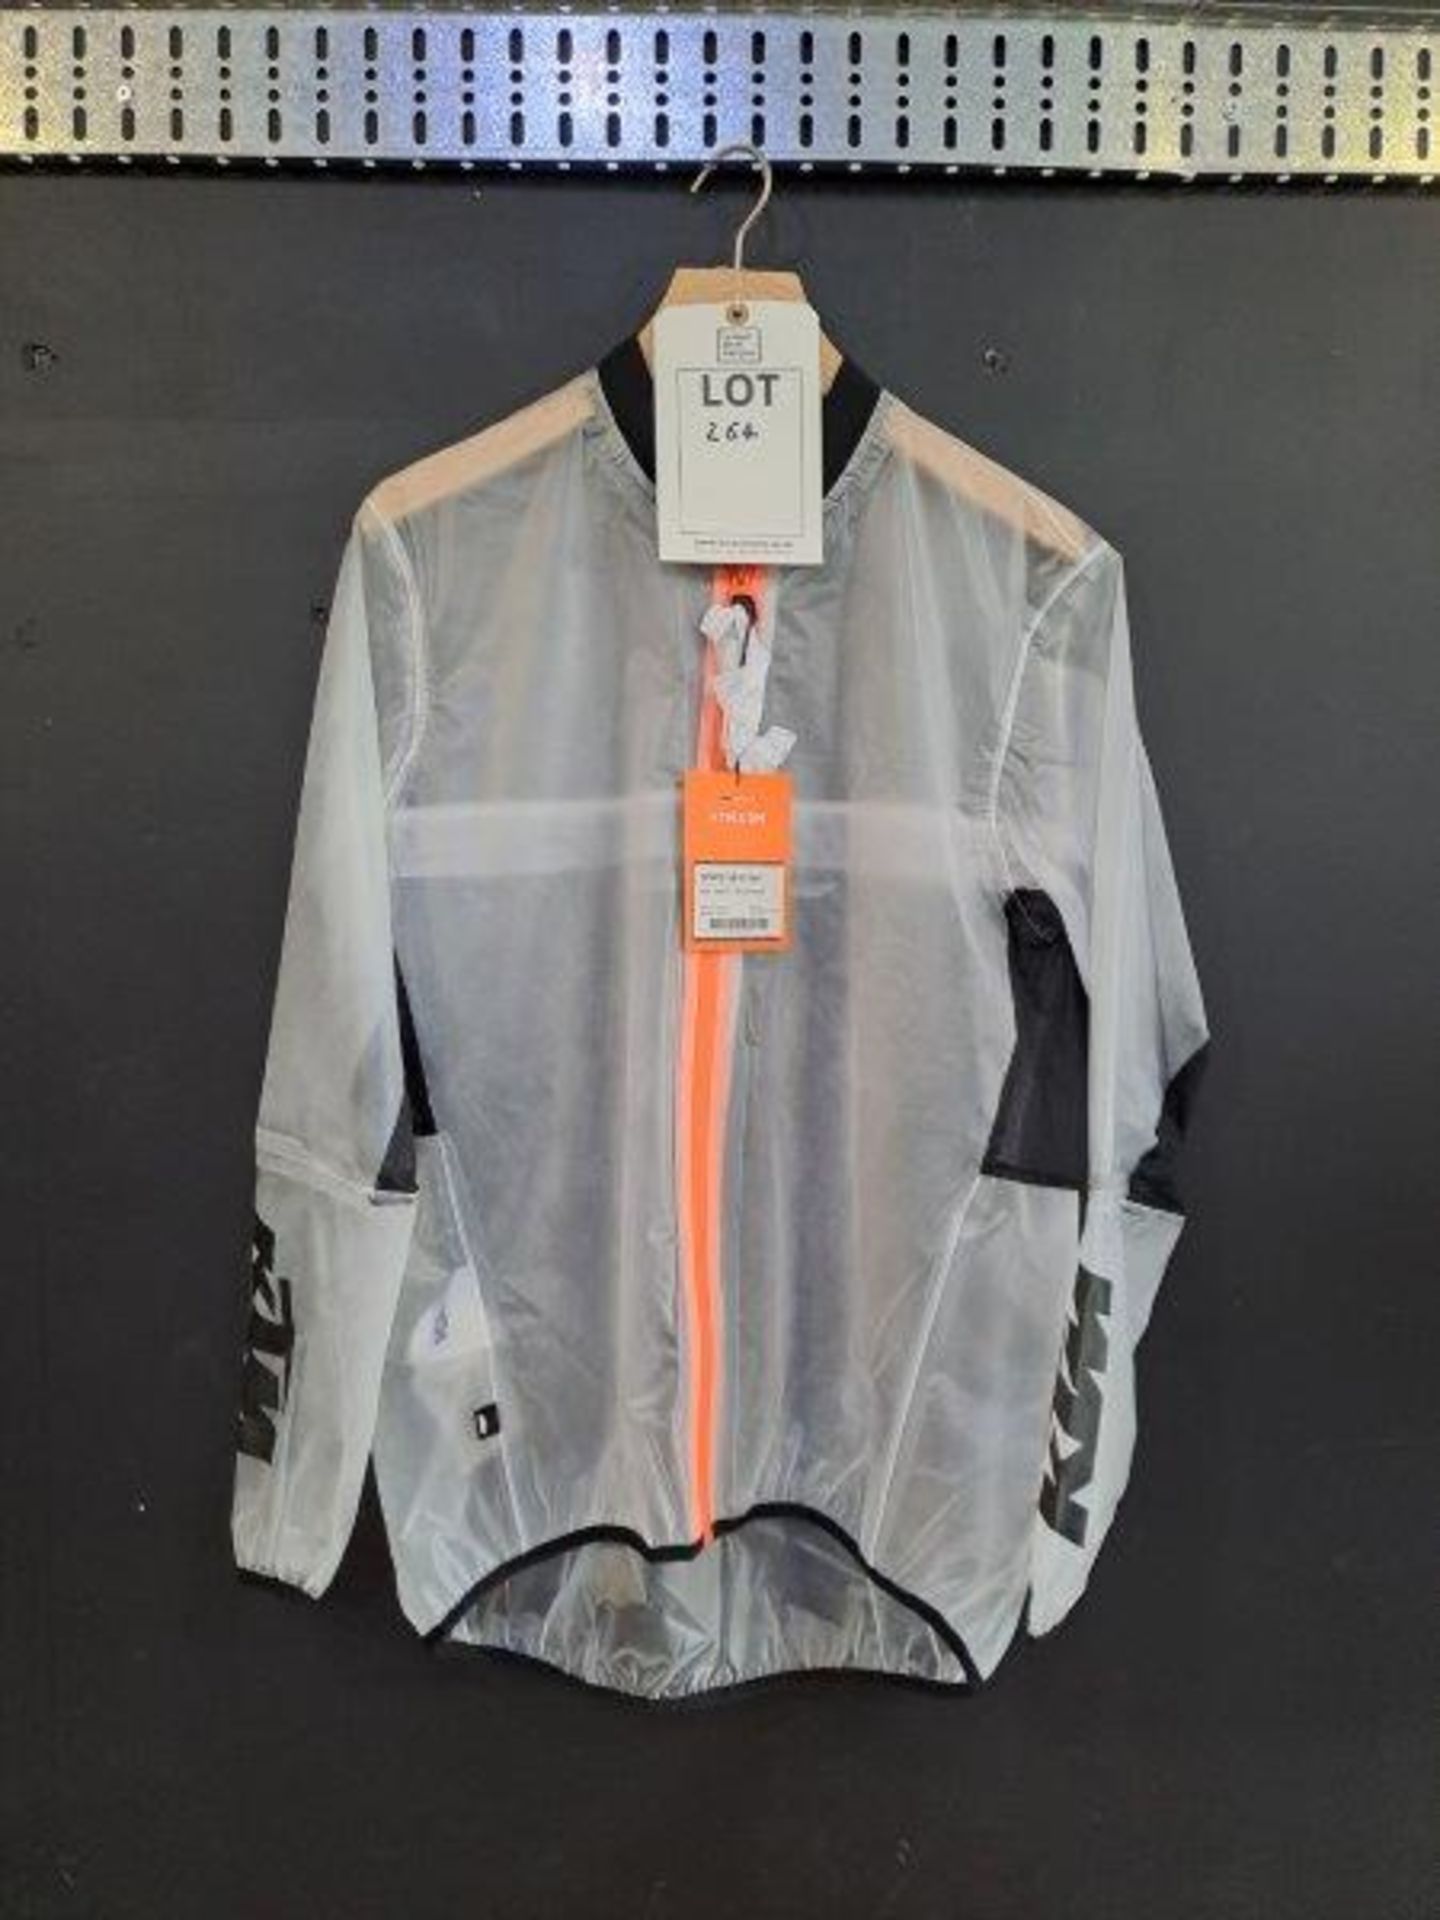 KTM Fashion Clothing - Image 3 of 9